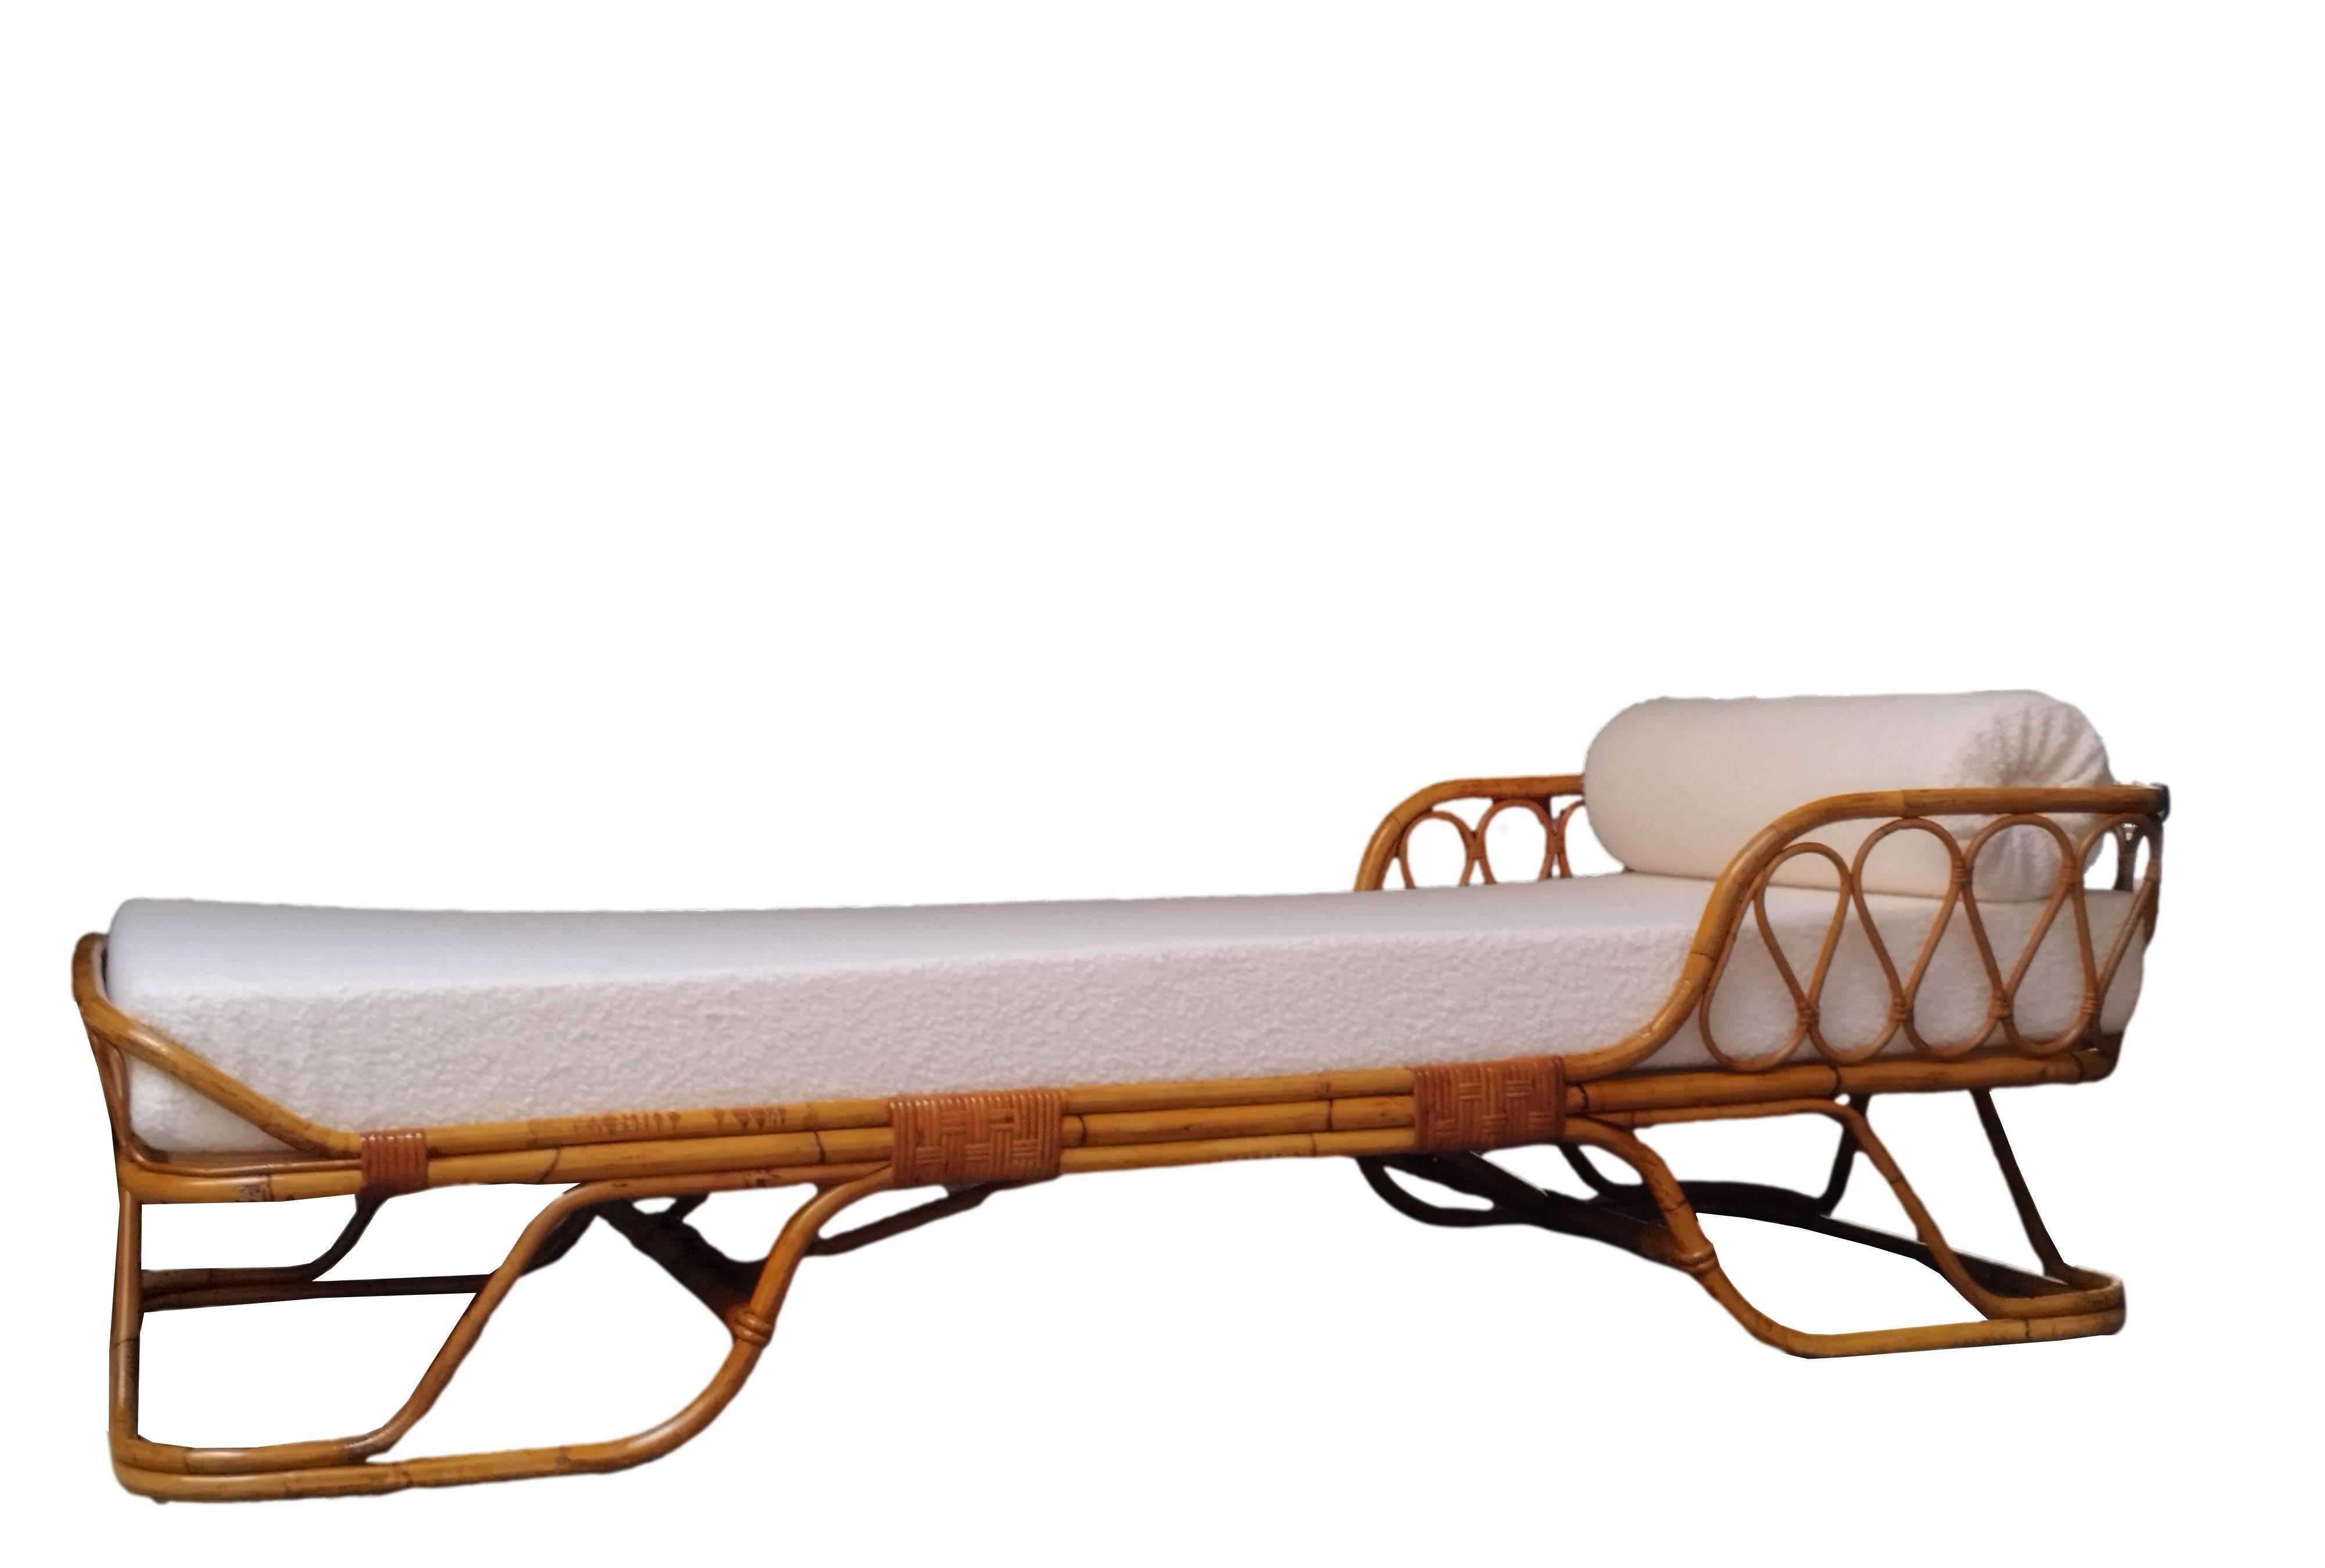 Magnifique lit de jour en bambou incurvé, conçu par Tito Agnoli pour Bonacina dans les années 1960. Le lit est entièrement constitué d'un cadre en bambou, de rotin et de joints en jonc avec un motif circulaire continu en bambou.